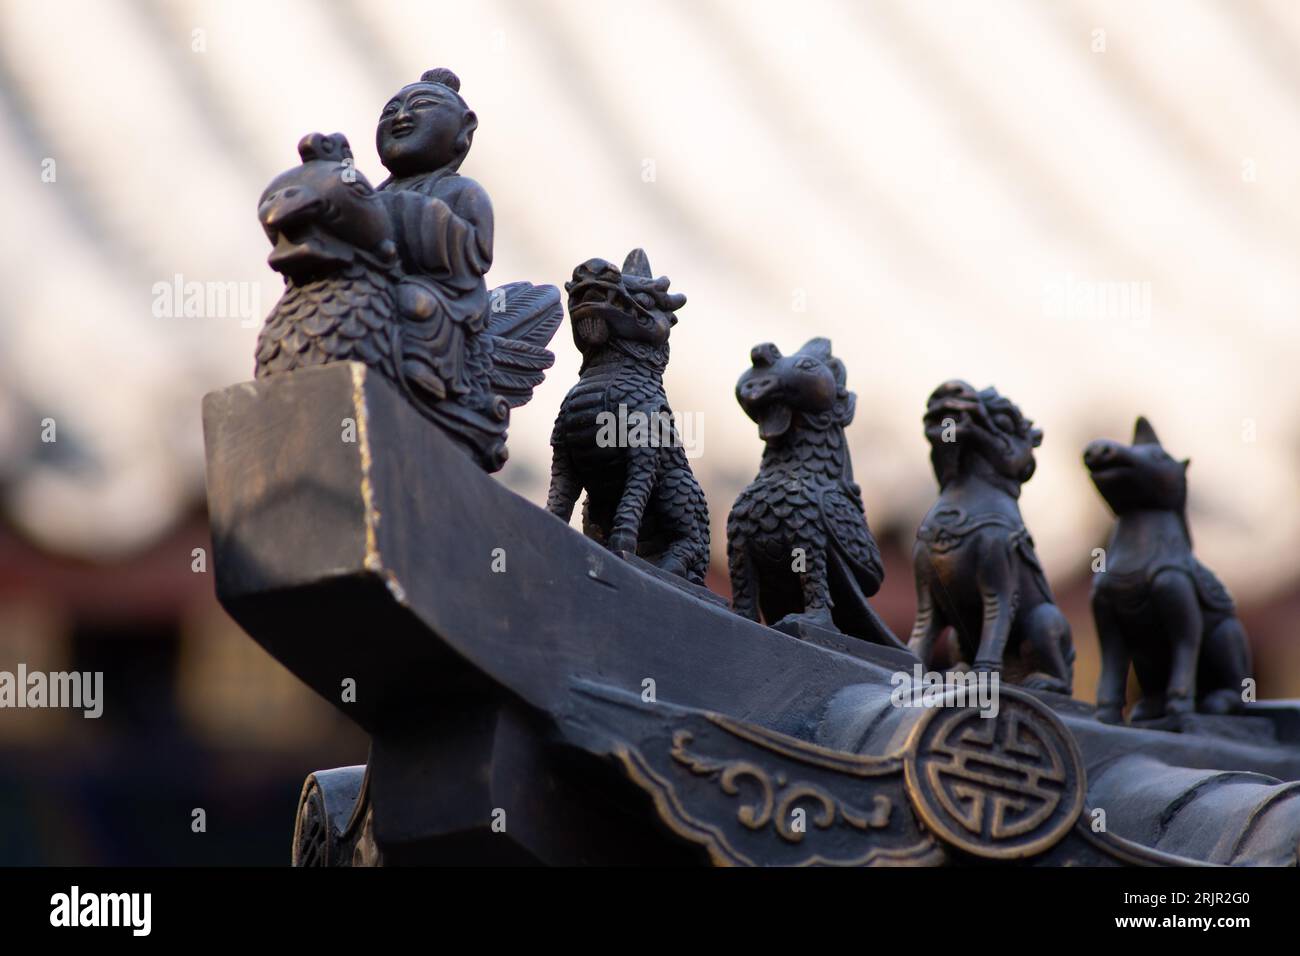 The Chinese mythologic figurines on Laoshan's Laozi's rooftop, China Stock Photo